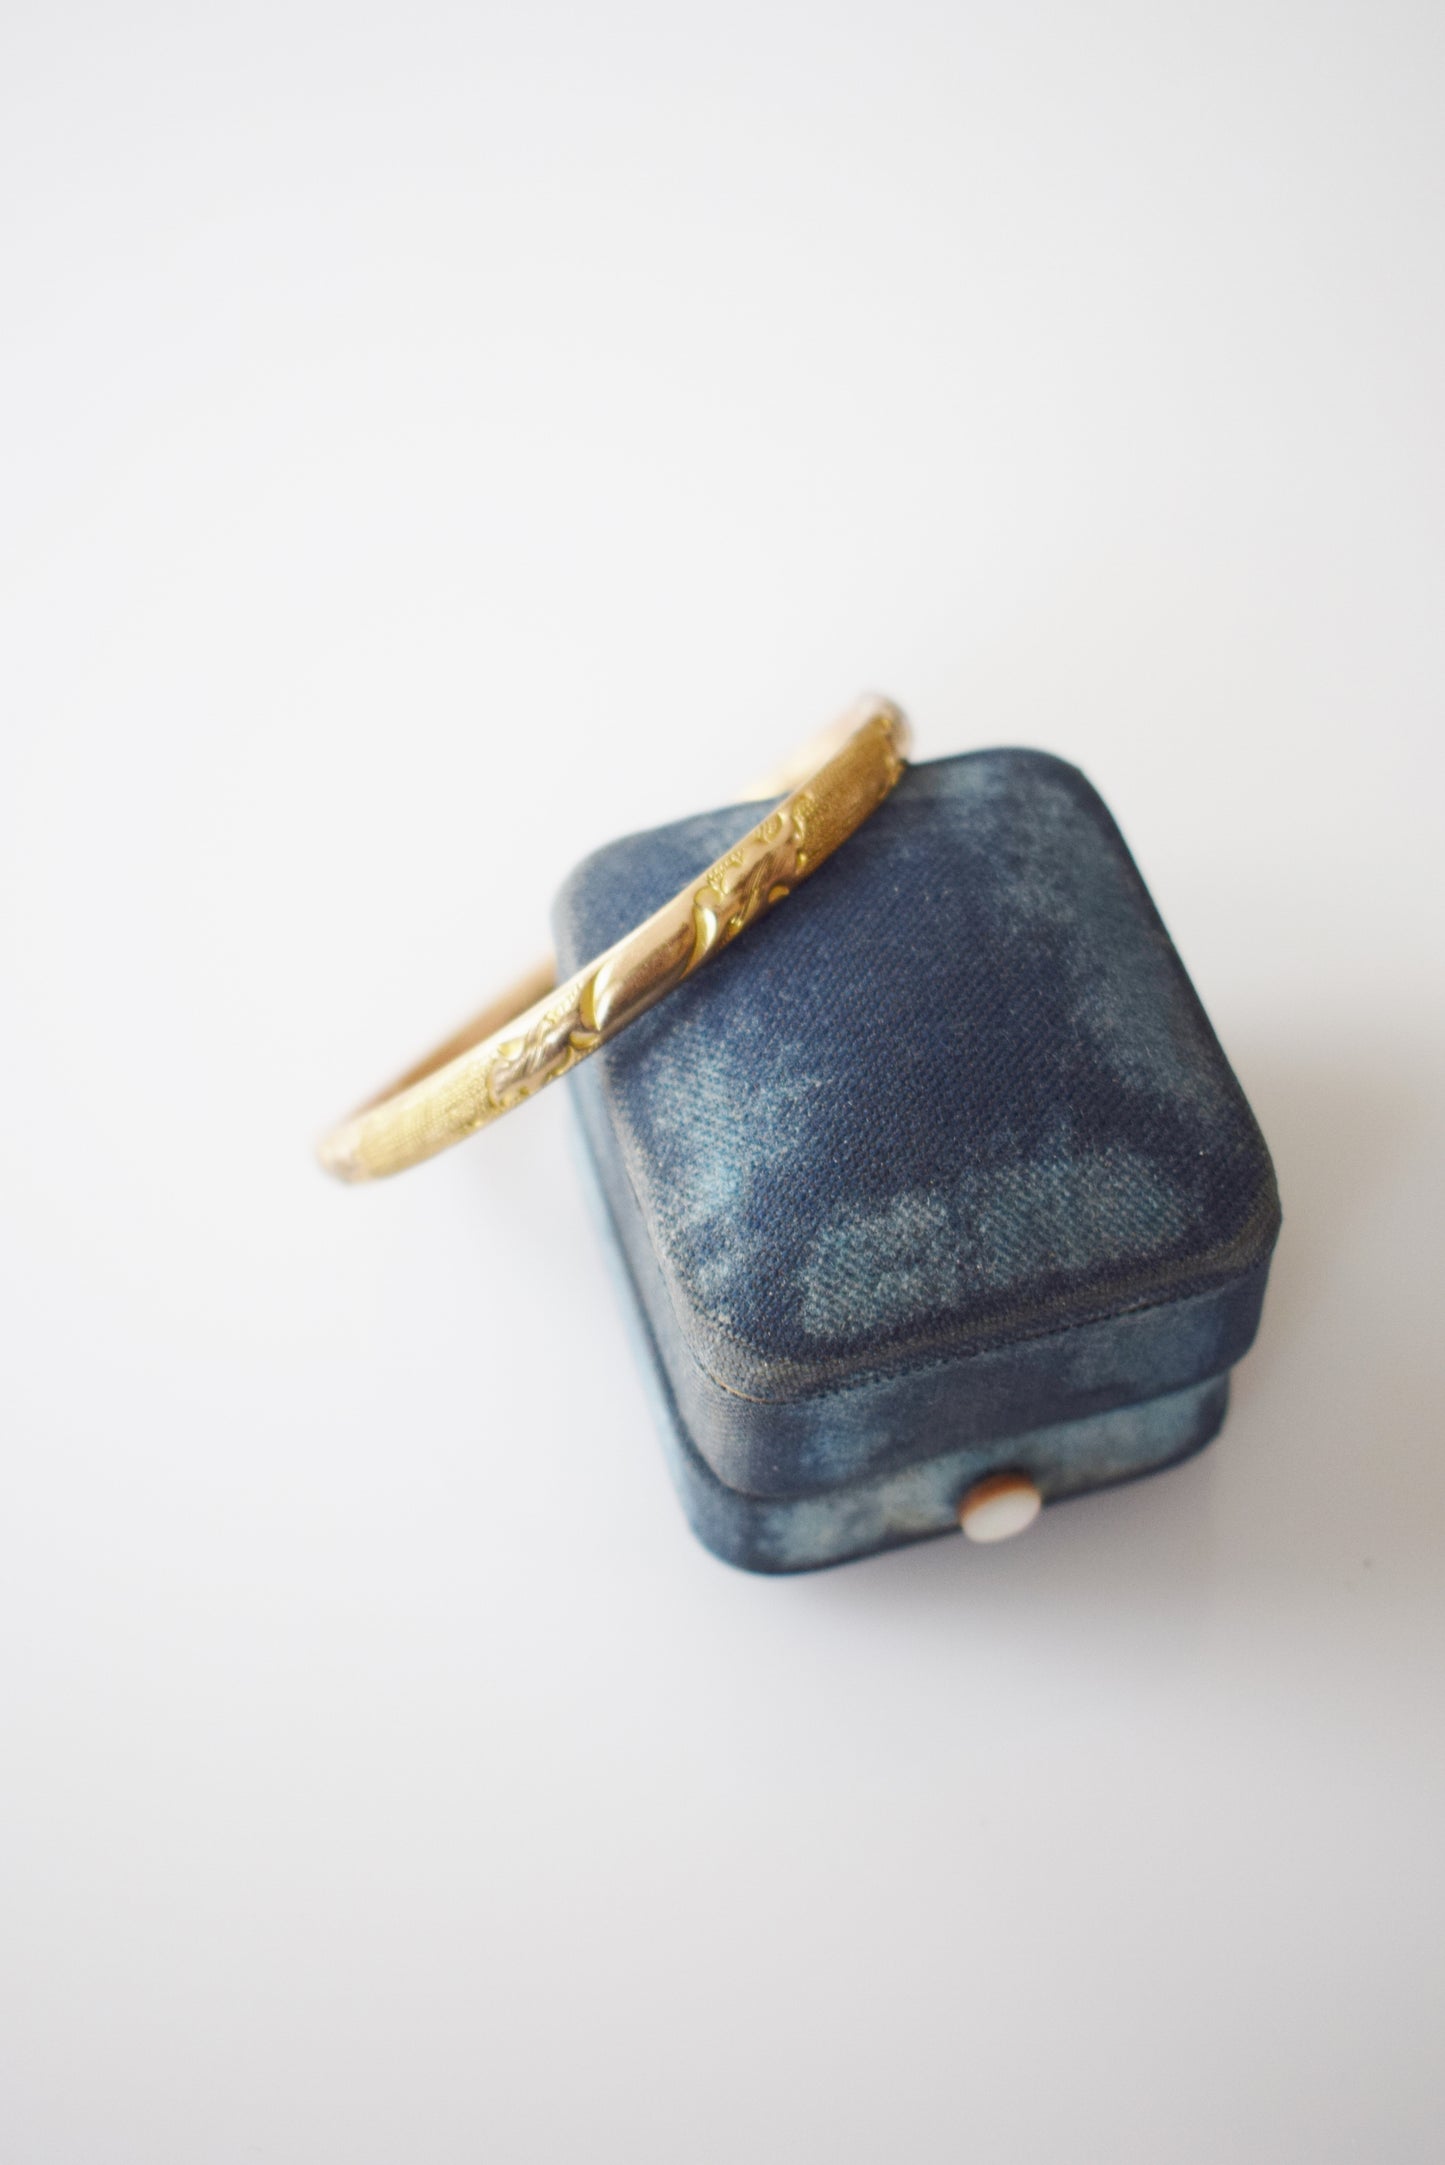 Antique Child's Gold Fill Bracelet | Mabelle